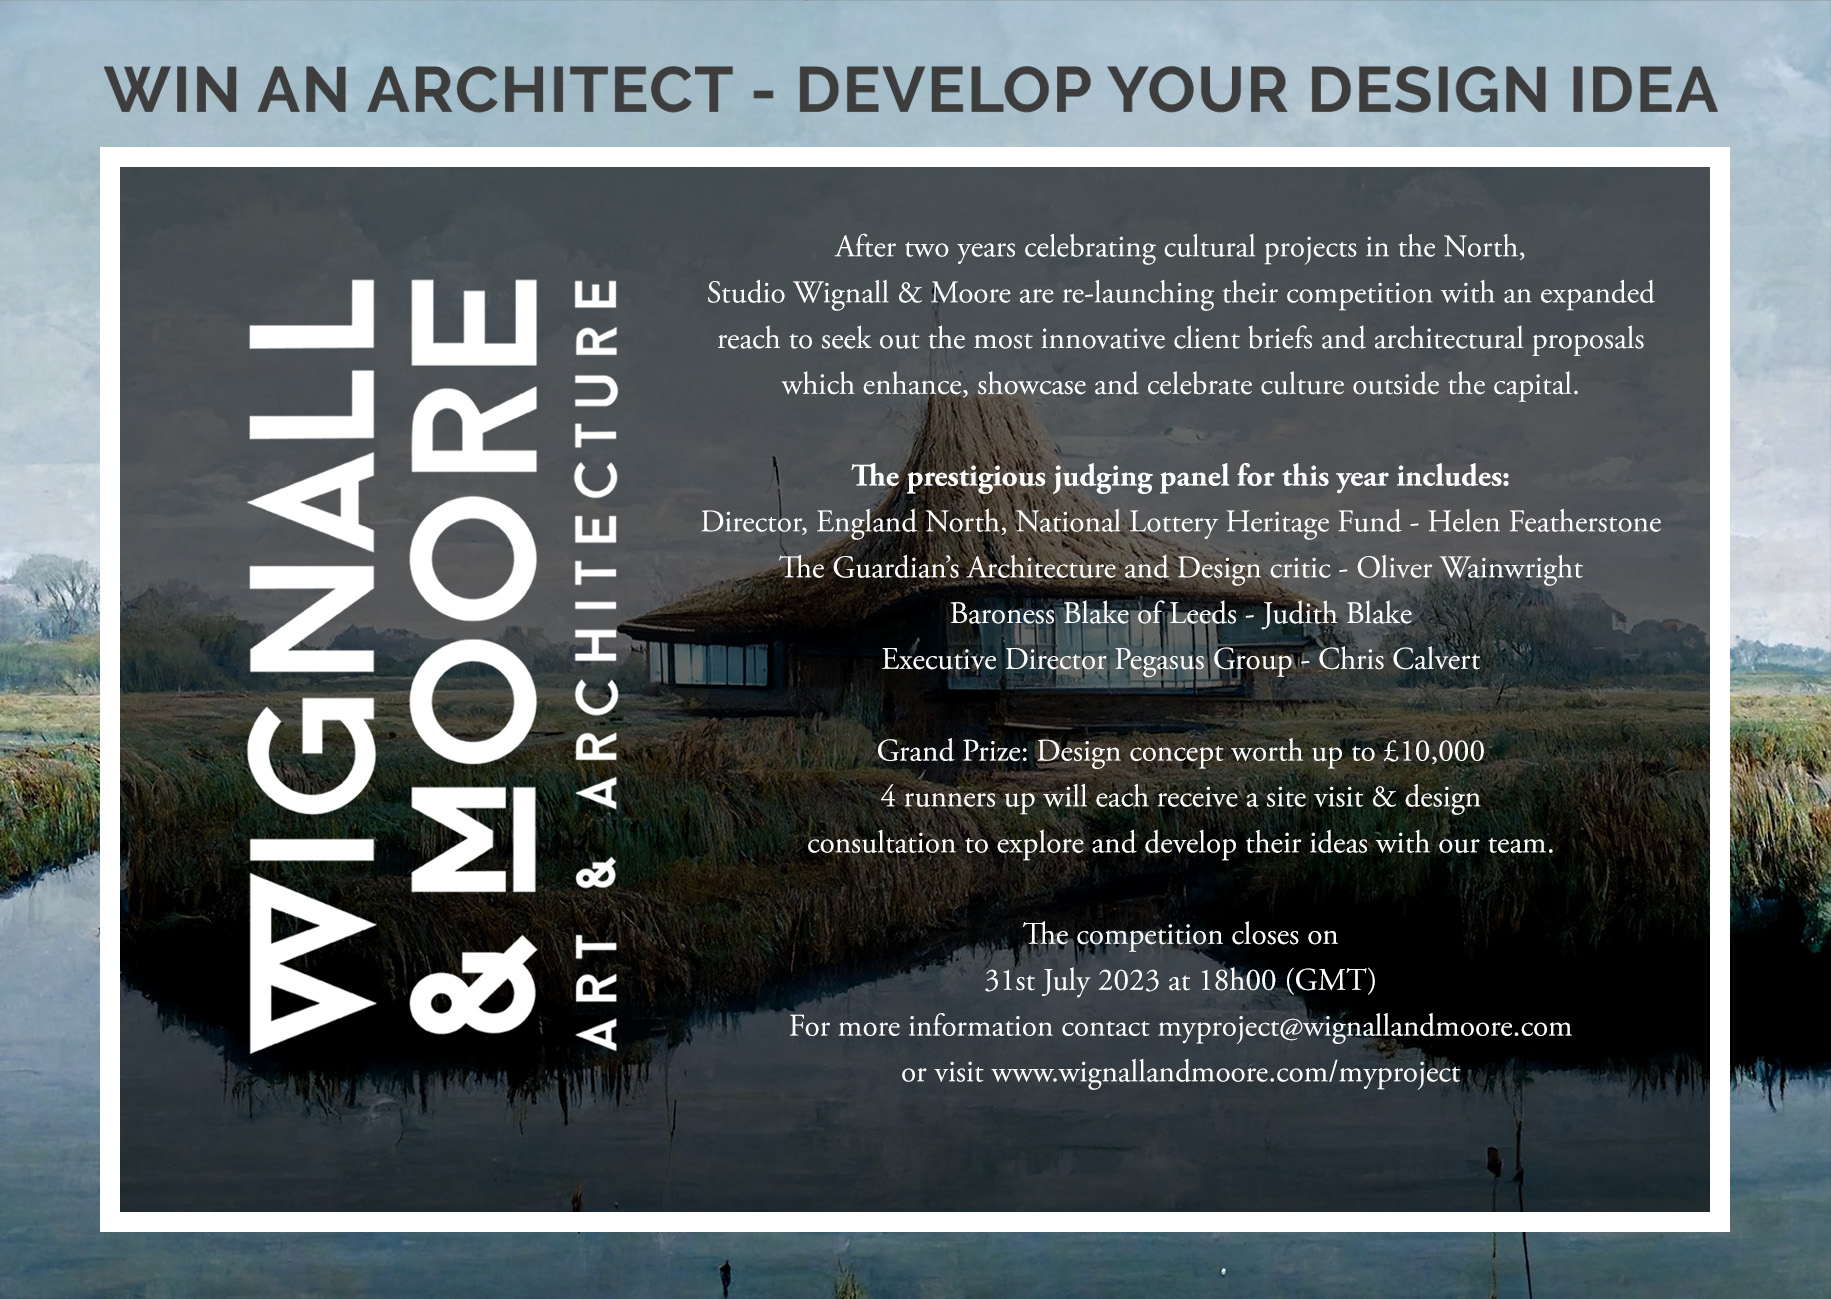 Architecture Design Handbook: Architectural Details: Wall Cladding